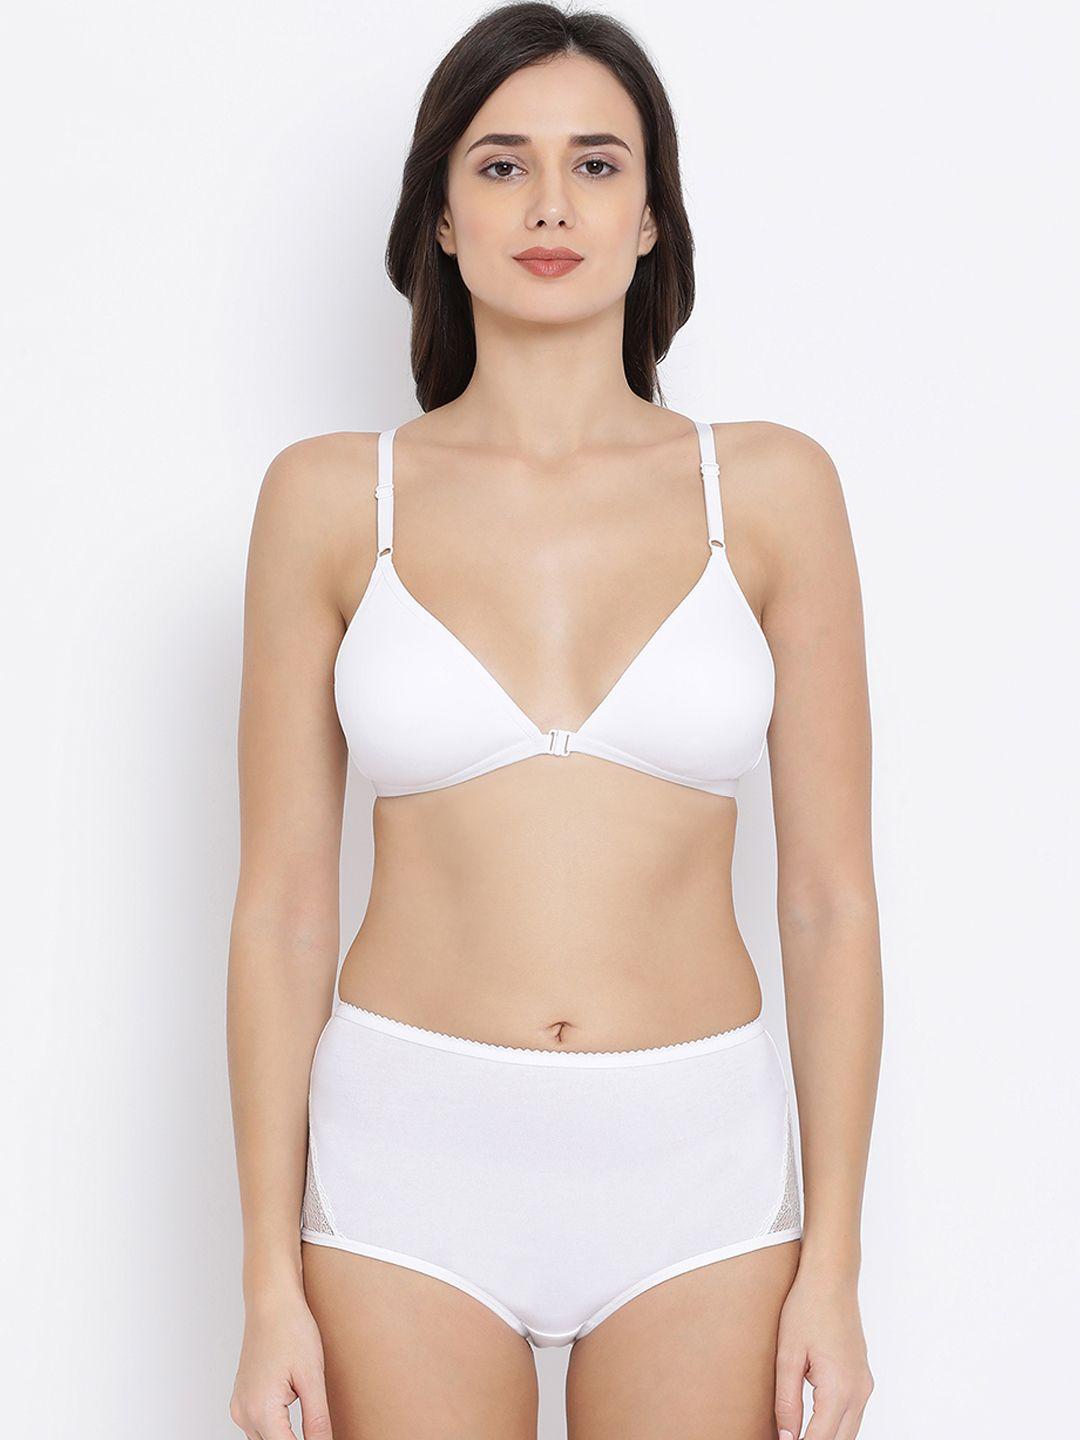 clovia women white solid lingerie set combbp76832b